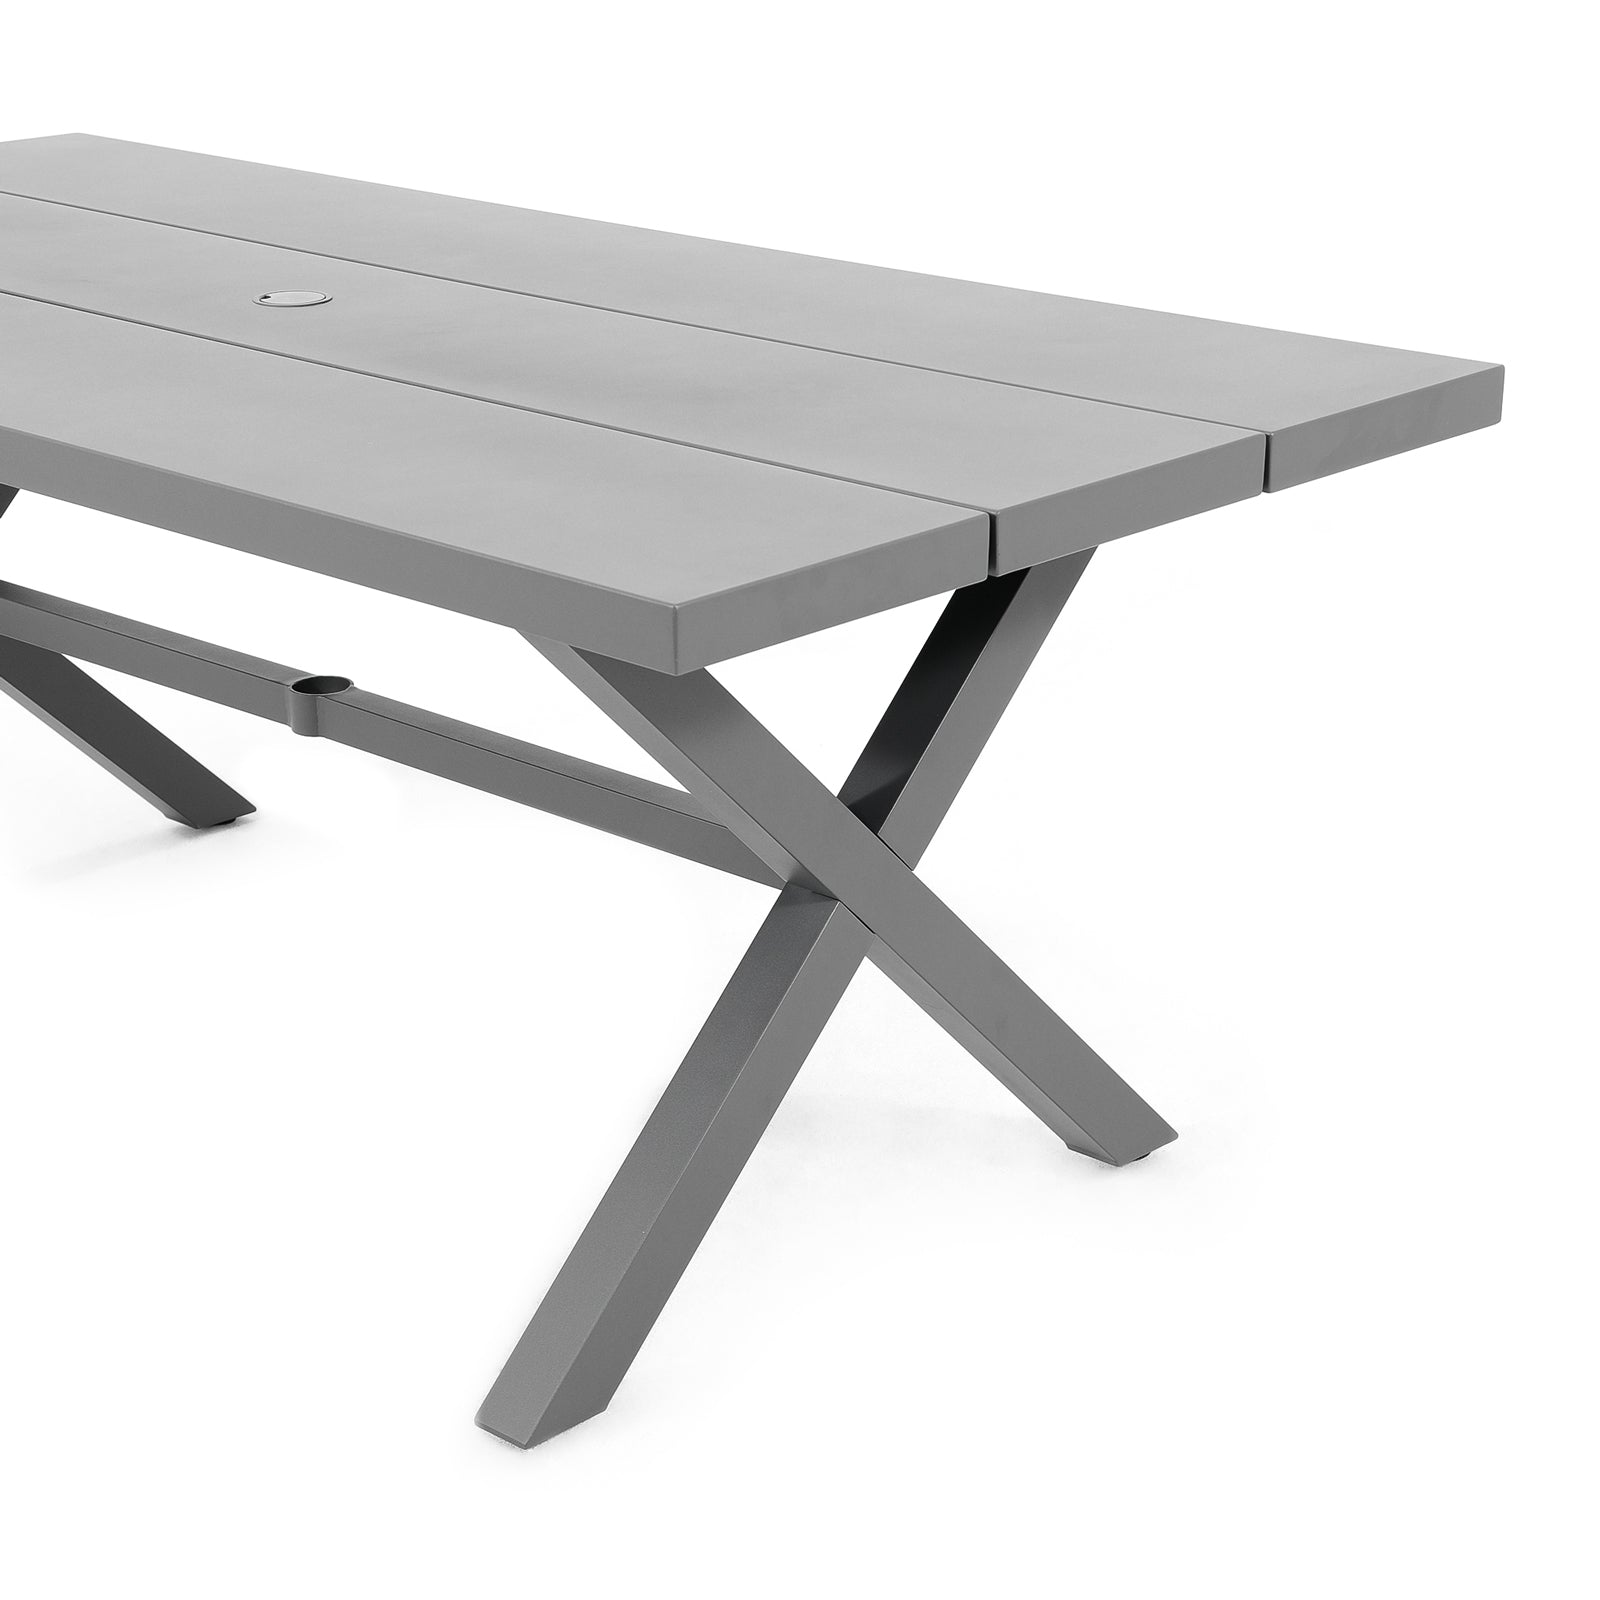 Salina grey outdoor Metal Dining table, X-Design Table- Jardina Furniture#color_Dark Grey